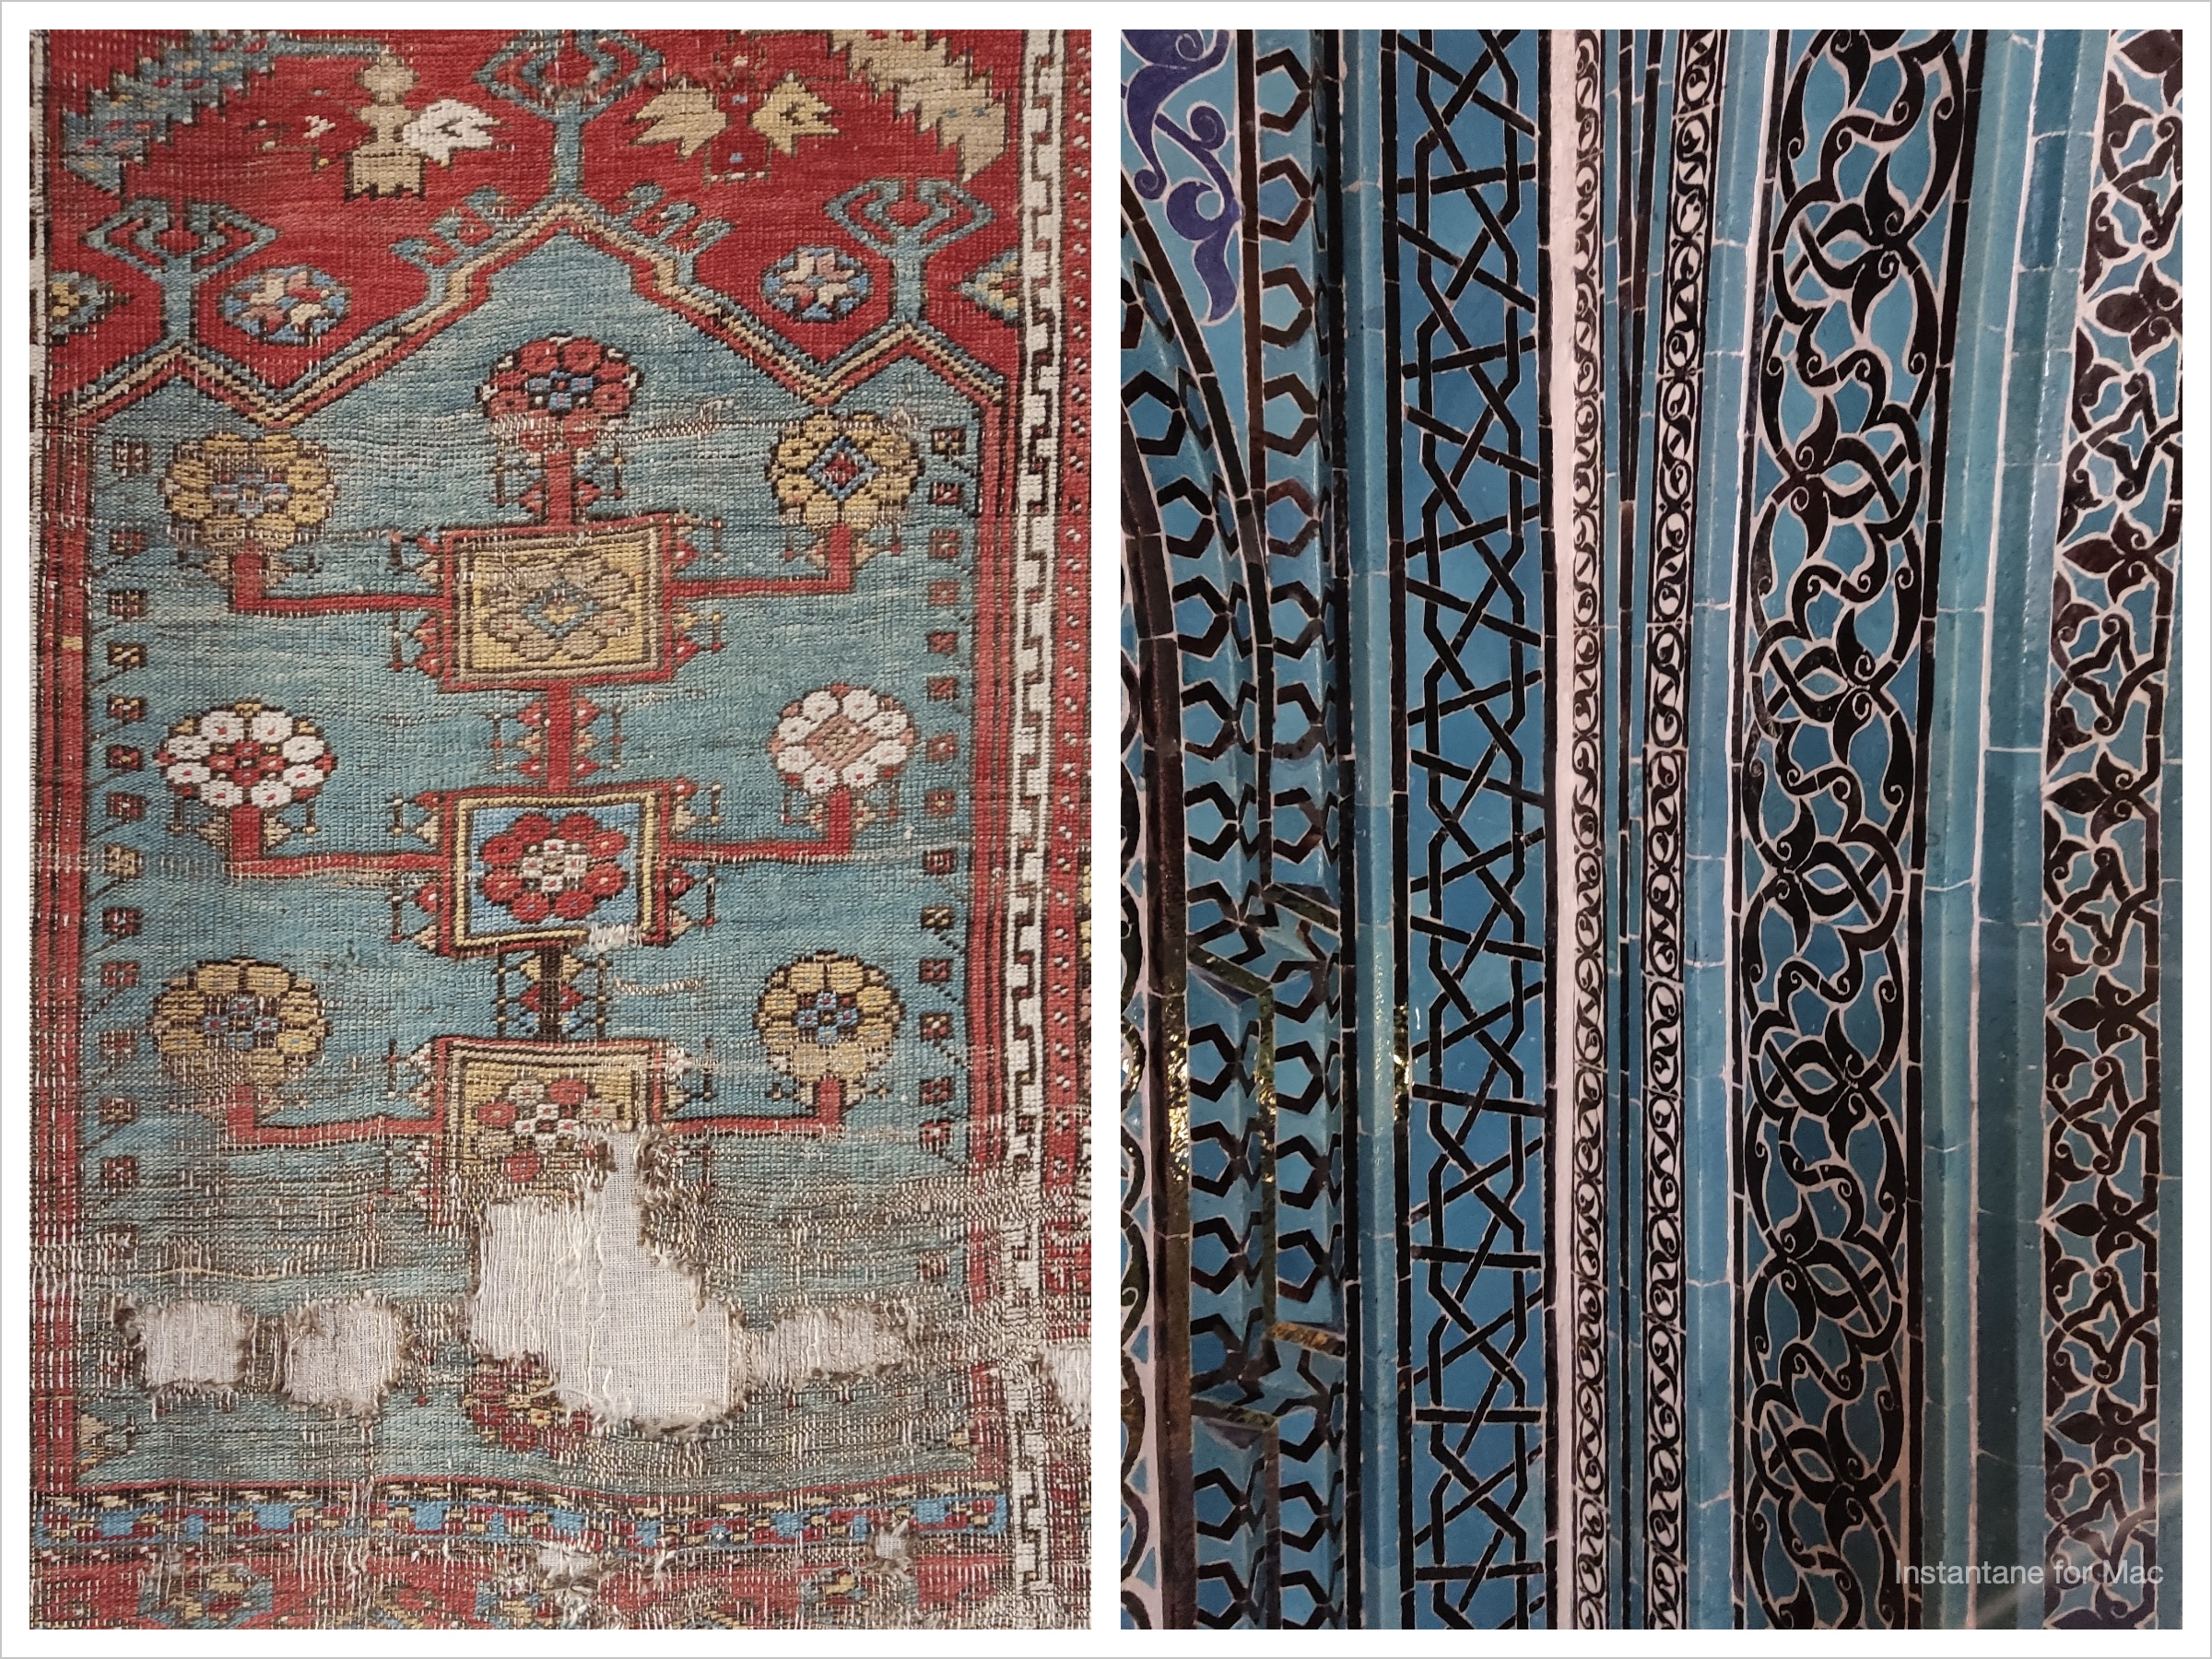 wzorzysty dywan turecki i wzorzyste niebiesko-czarno-biae kafle